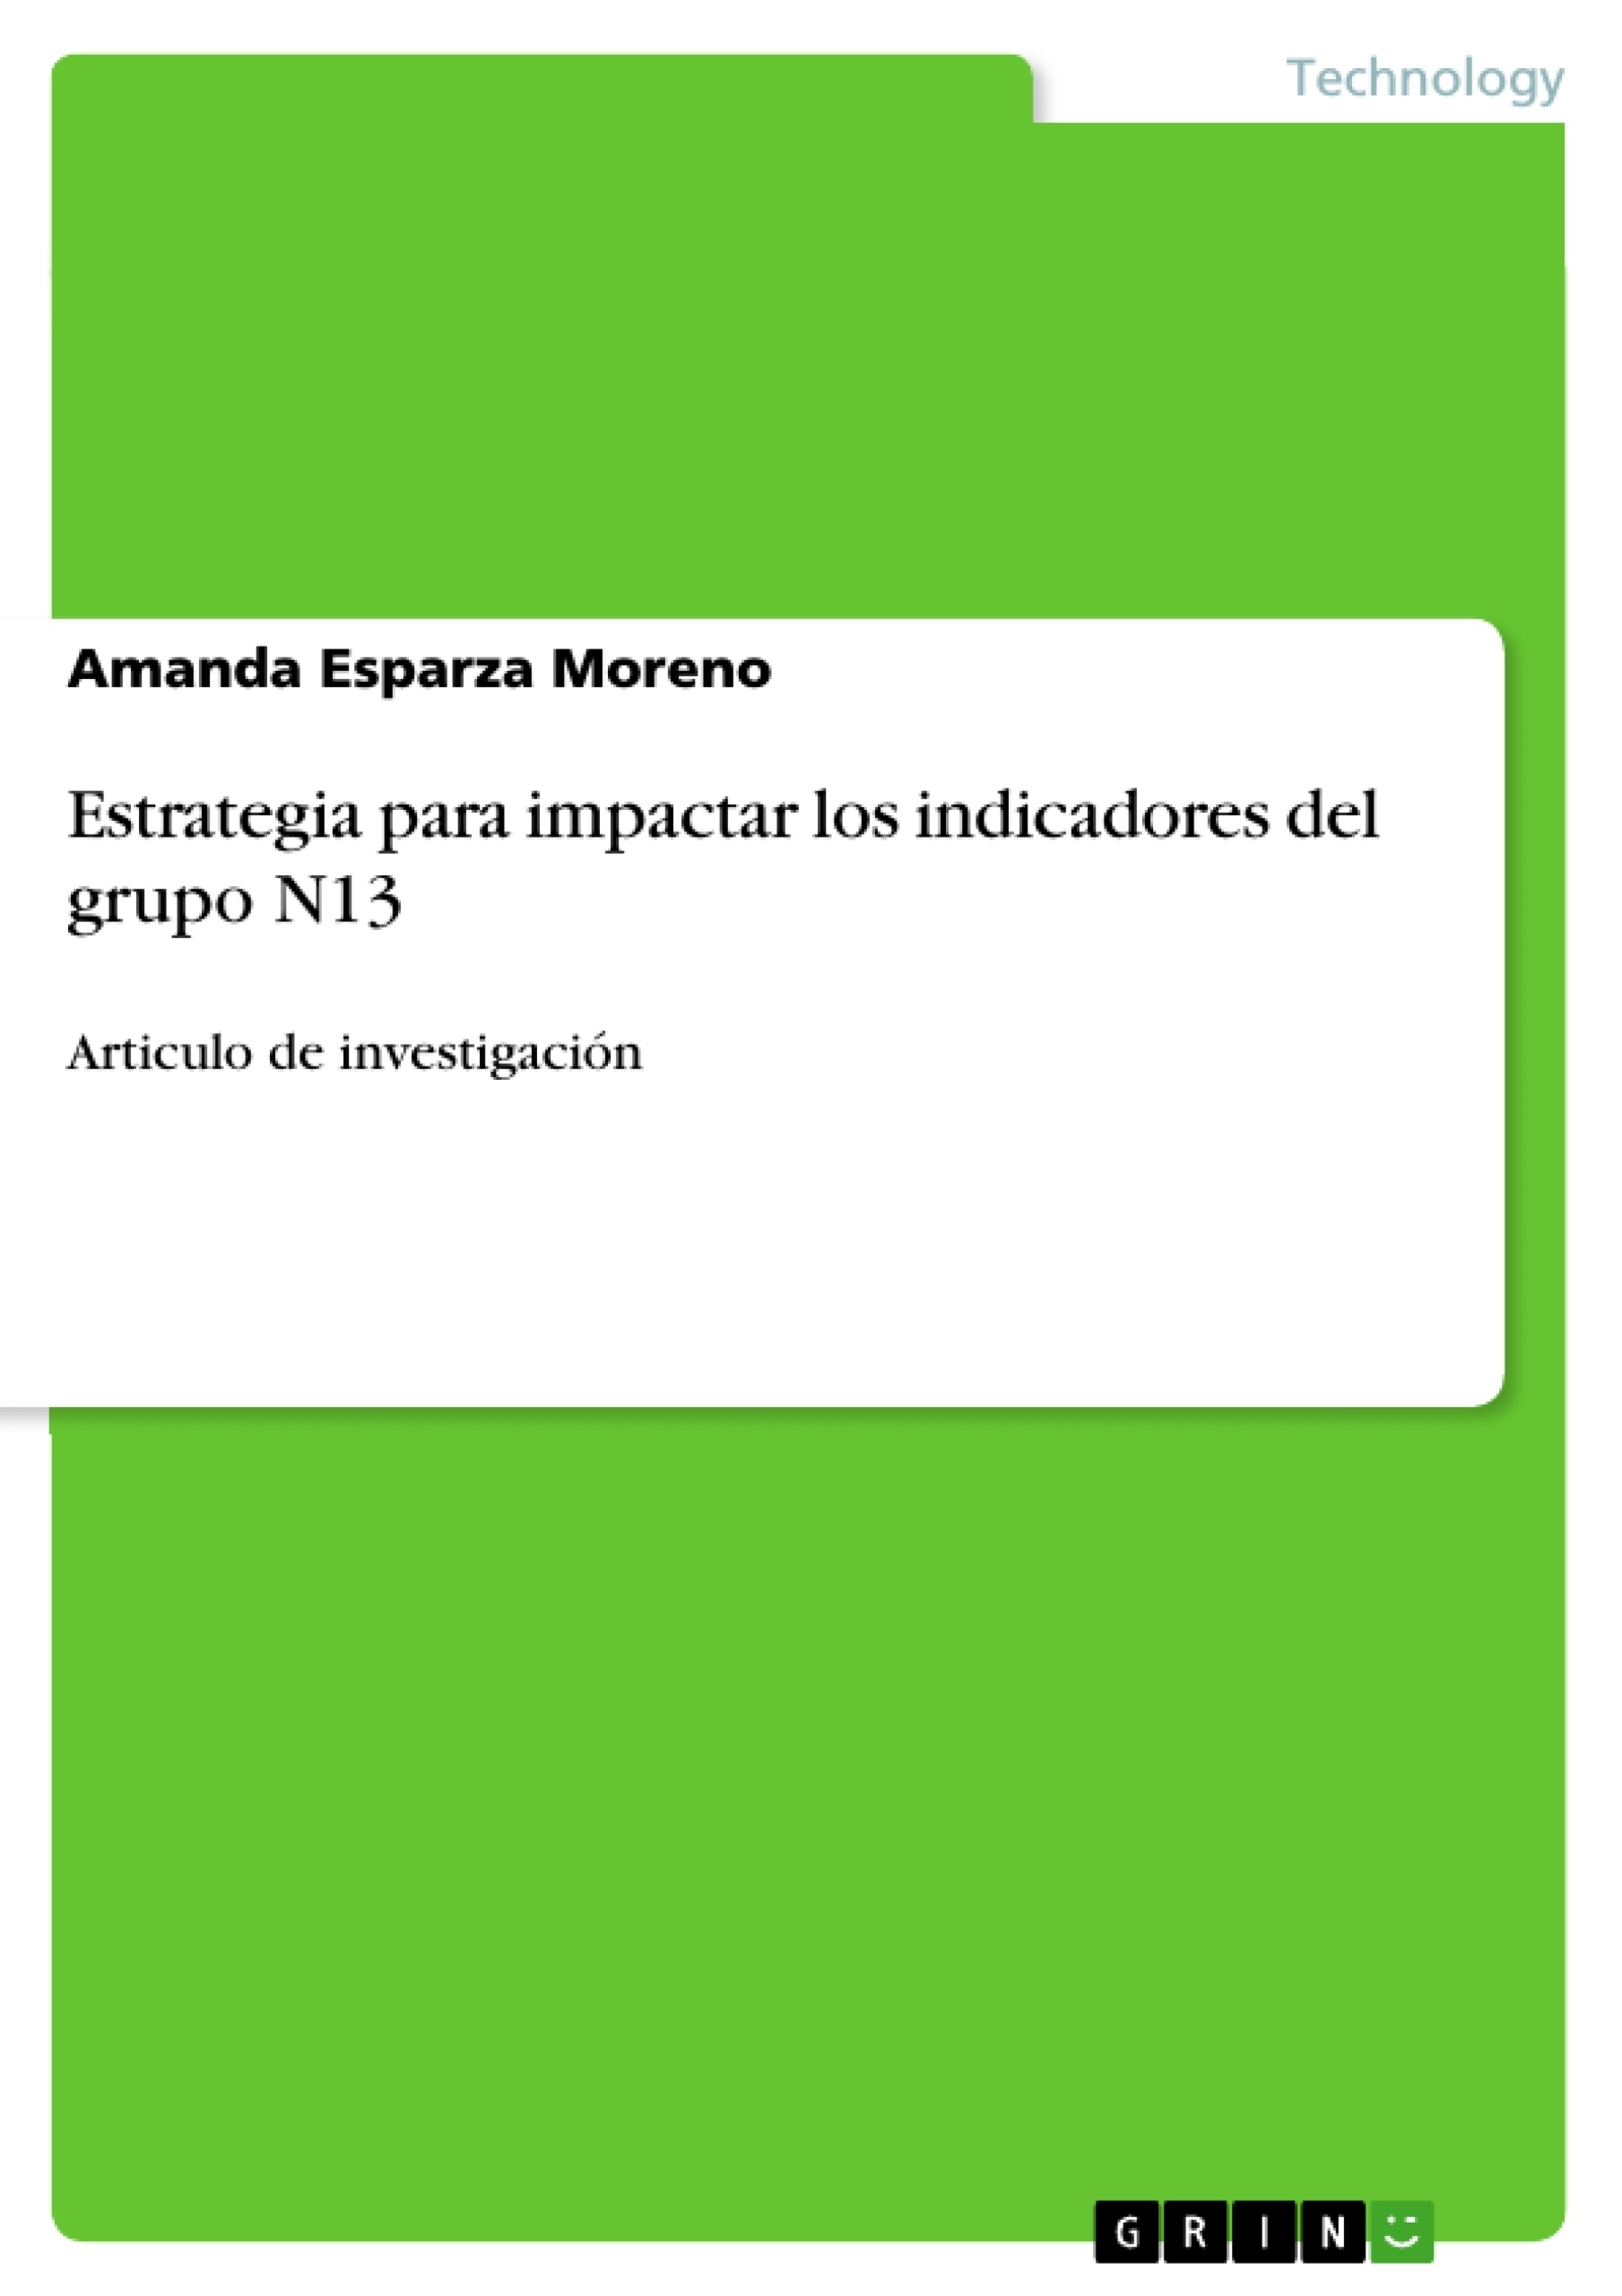 Título: Estrategia para impactar los indicadores del grupo N13